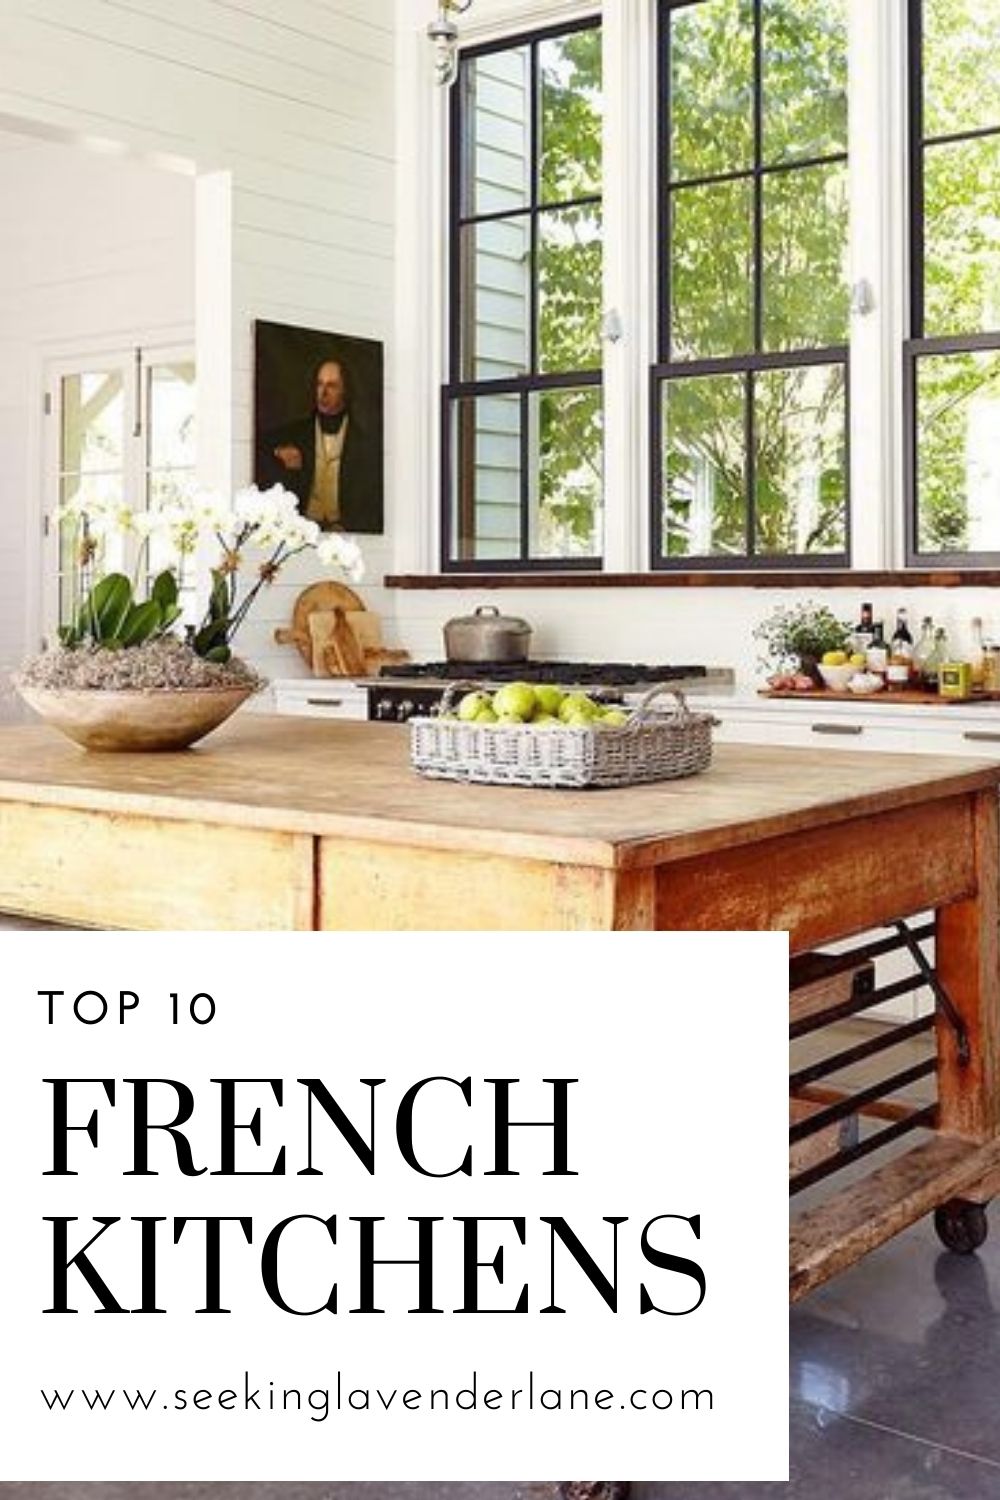 10 French Kitchens - Seeking Lavender Lane